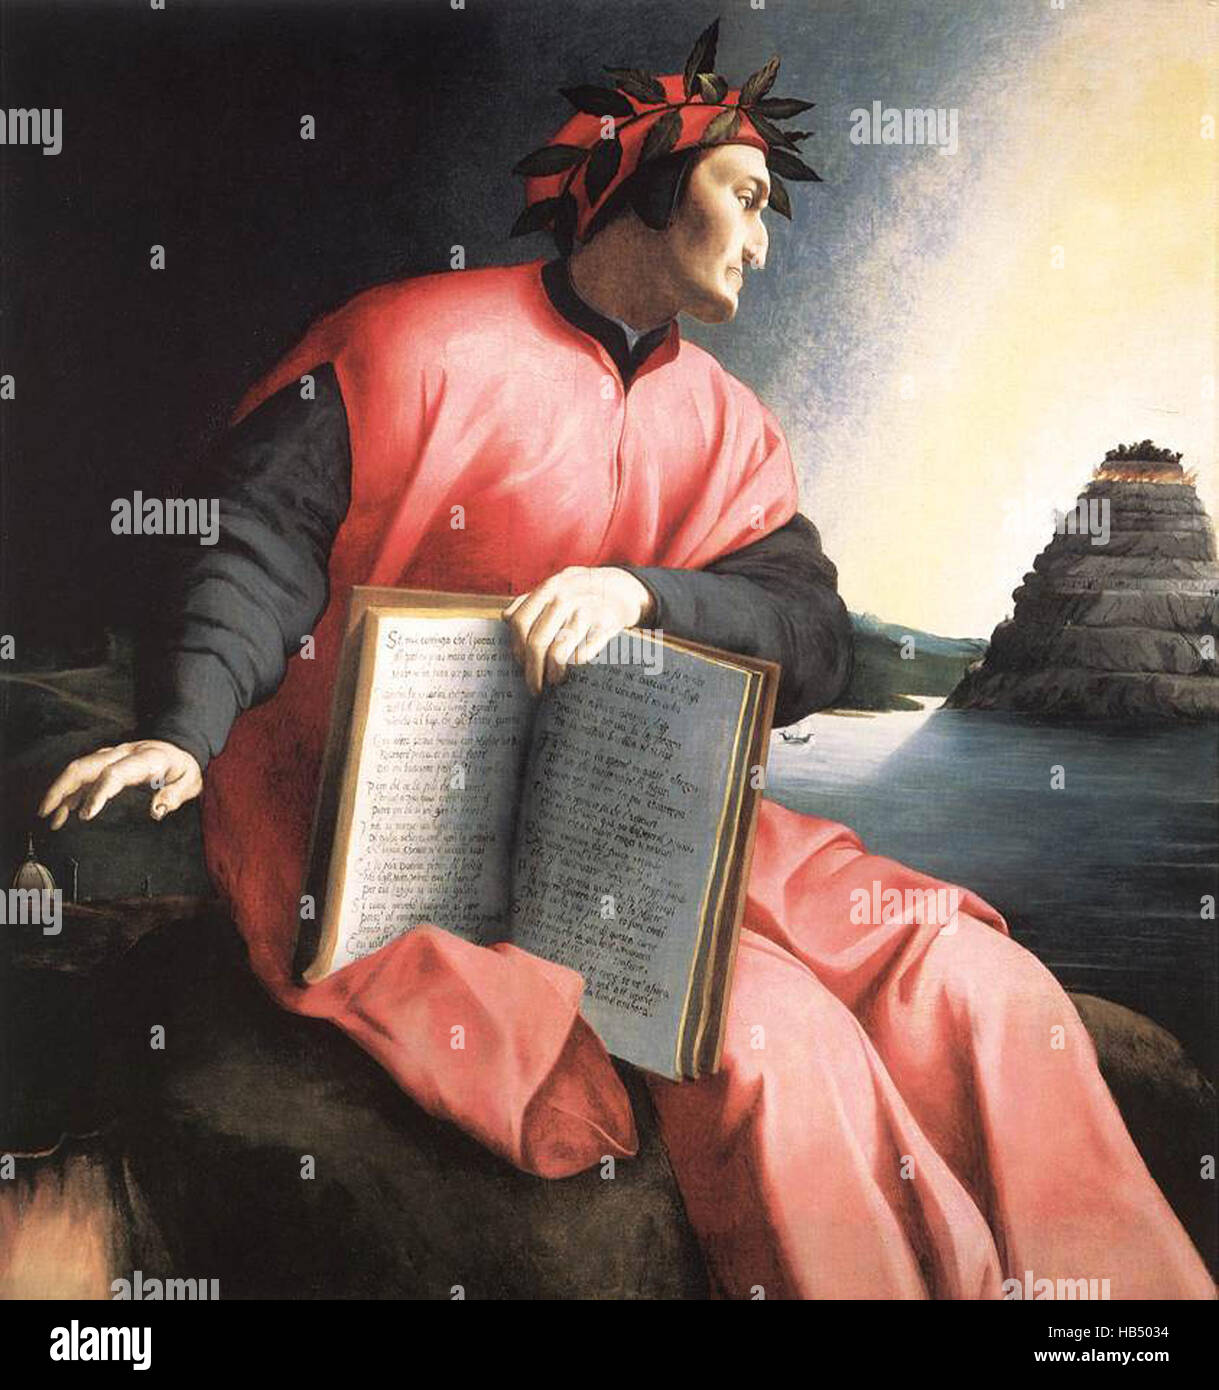 Alegorical ritratto di Dante Alighieri, da Agnolo Bronzino, c. 1530. Il libro ha conseguito è una copia della Divina Commedia, aperto alla XXV canto del Paradiso. Duranti degli Alighieri, chiamato semplicemente Dante [C. 1265 - 1321), è stato un grande poeta italiano del tardo medioevo. La sua Divina Commedia, originariamente chiamato Comedia (moderno italiano: Commedia) e più tardi battezzata Divina da Boccaccio. Foto Stock